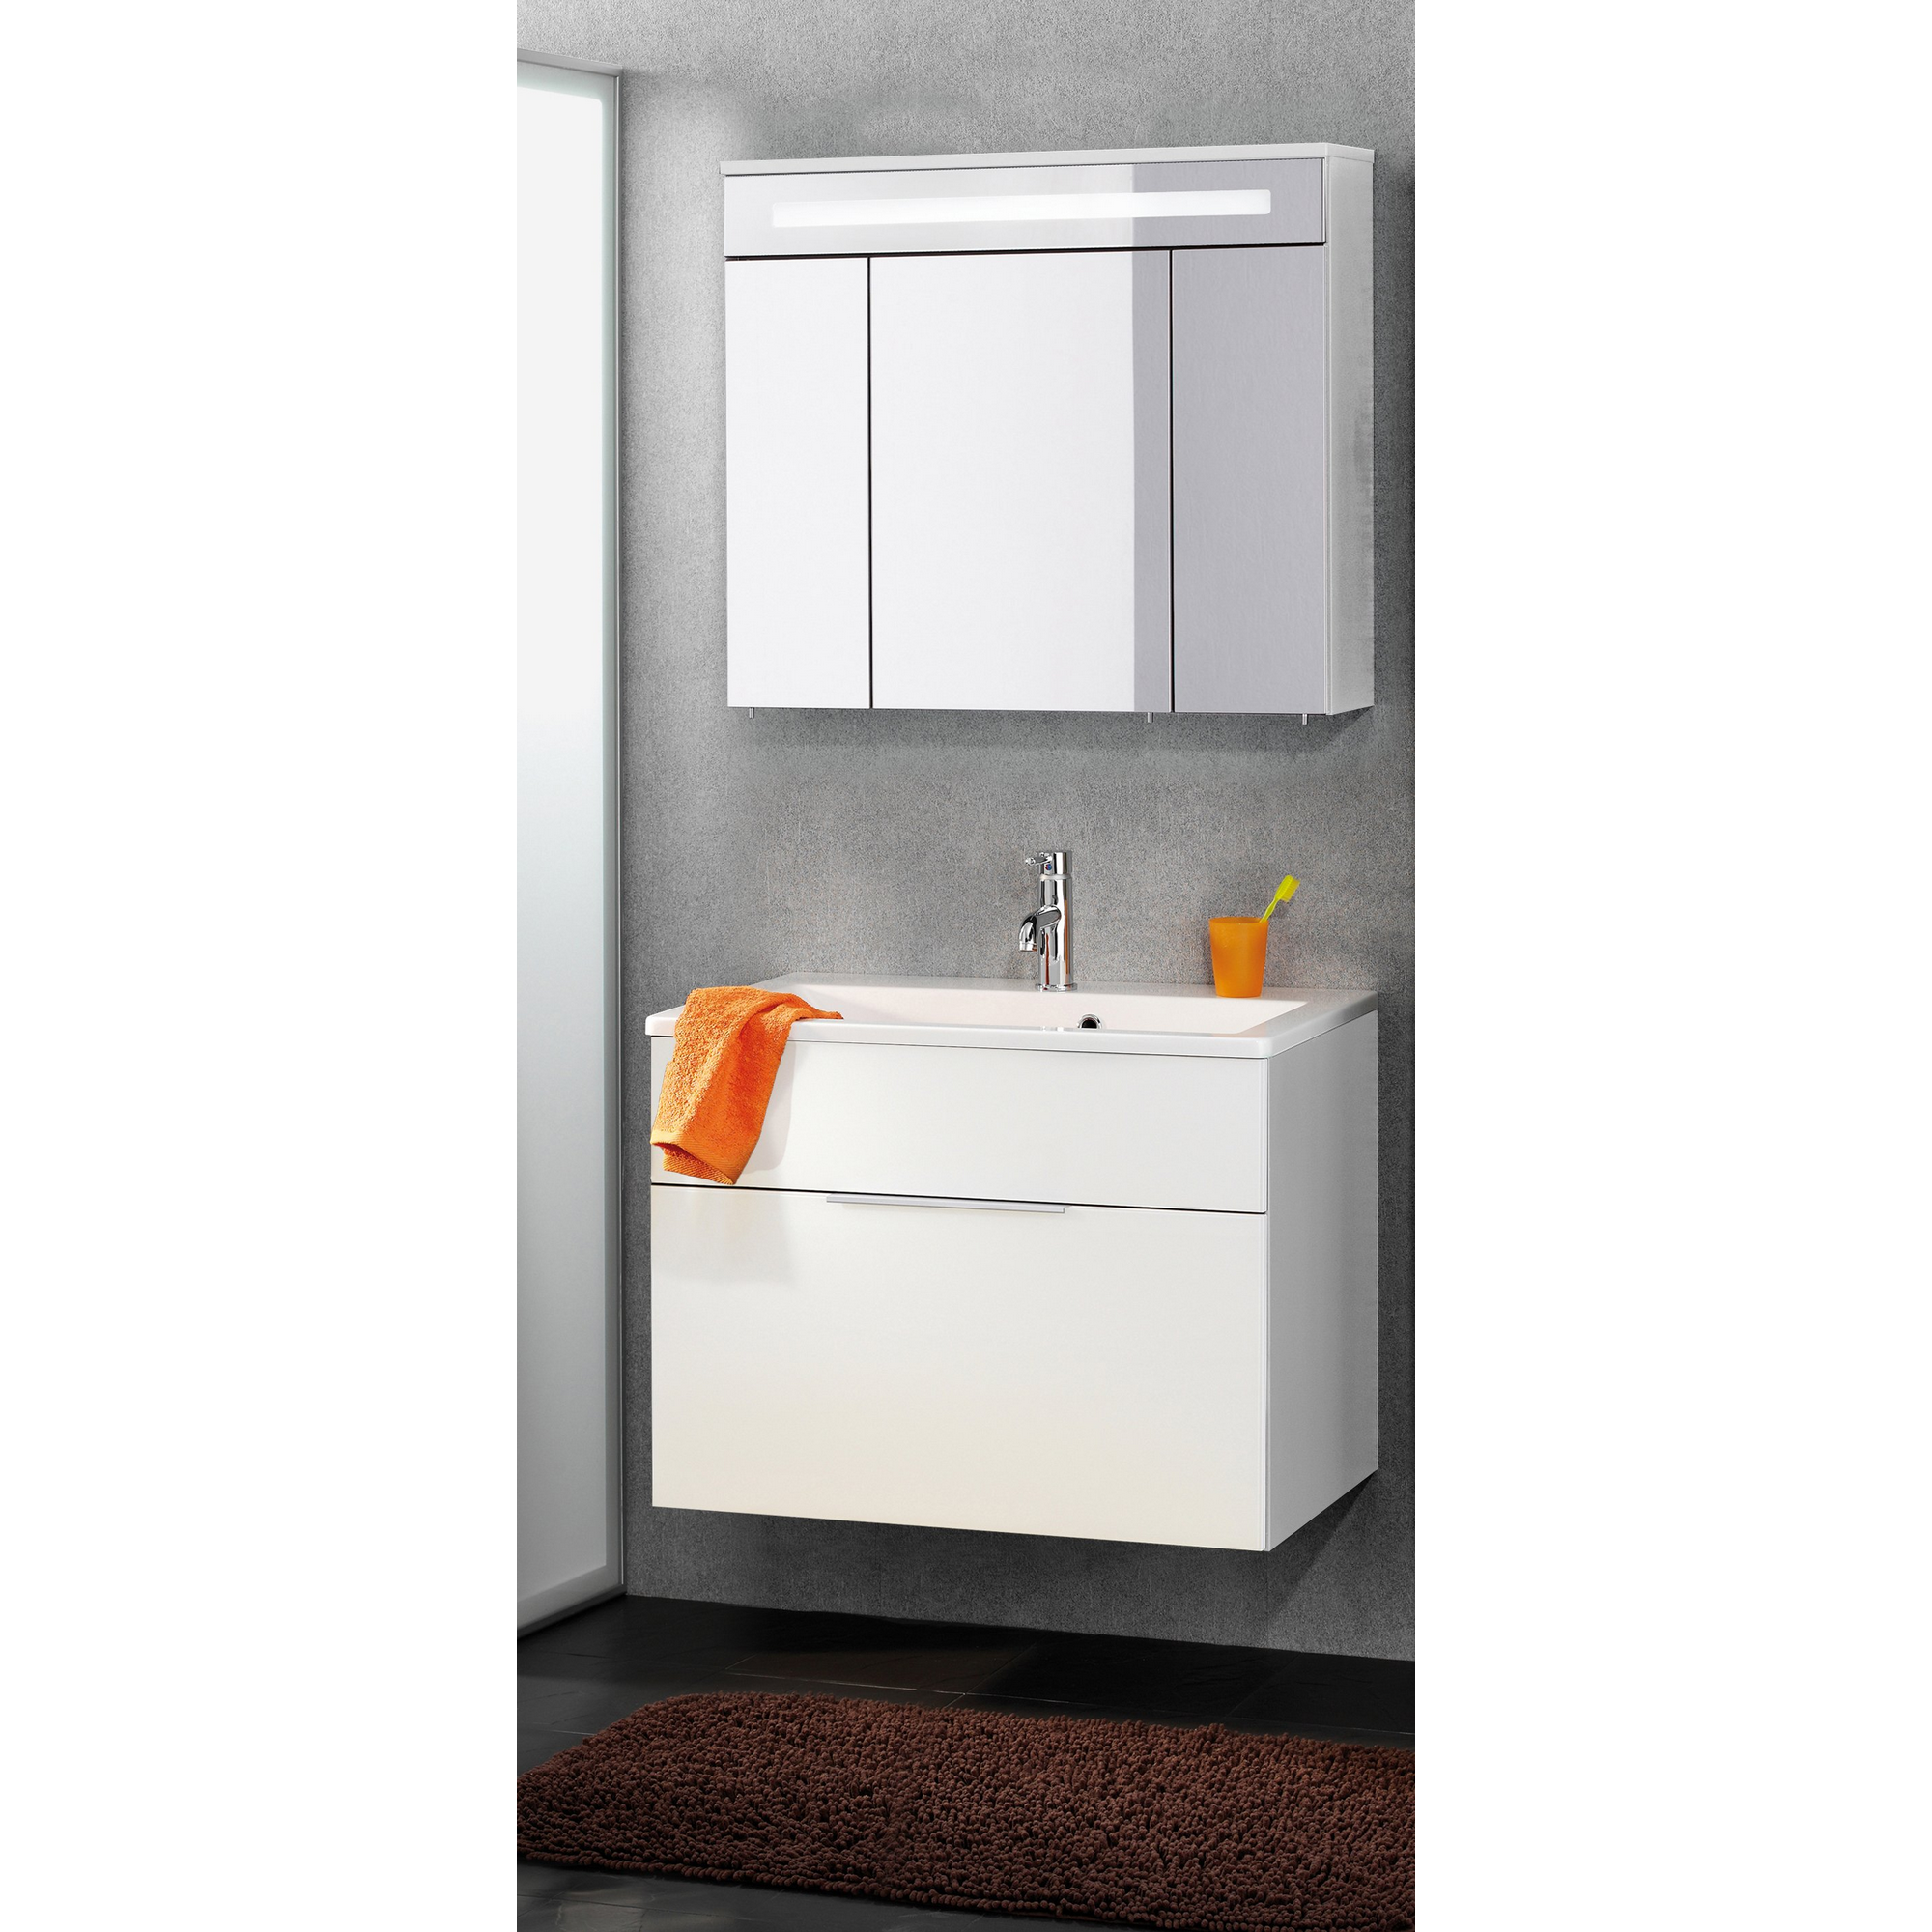 Waschtischunterschrank 'Kara' weiß 79,5 x 59 x 49 cm + product picture